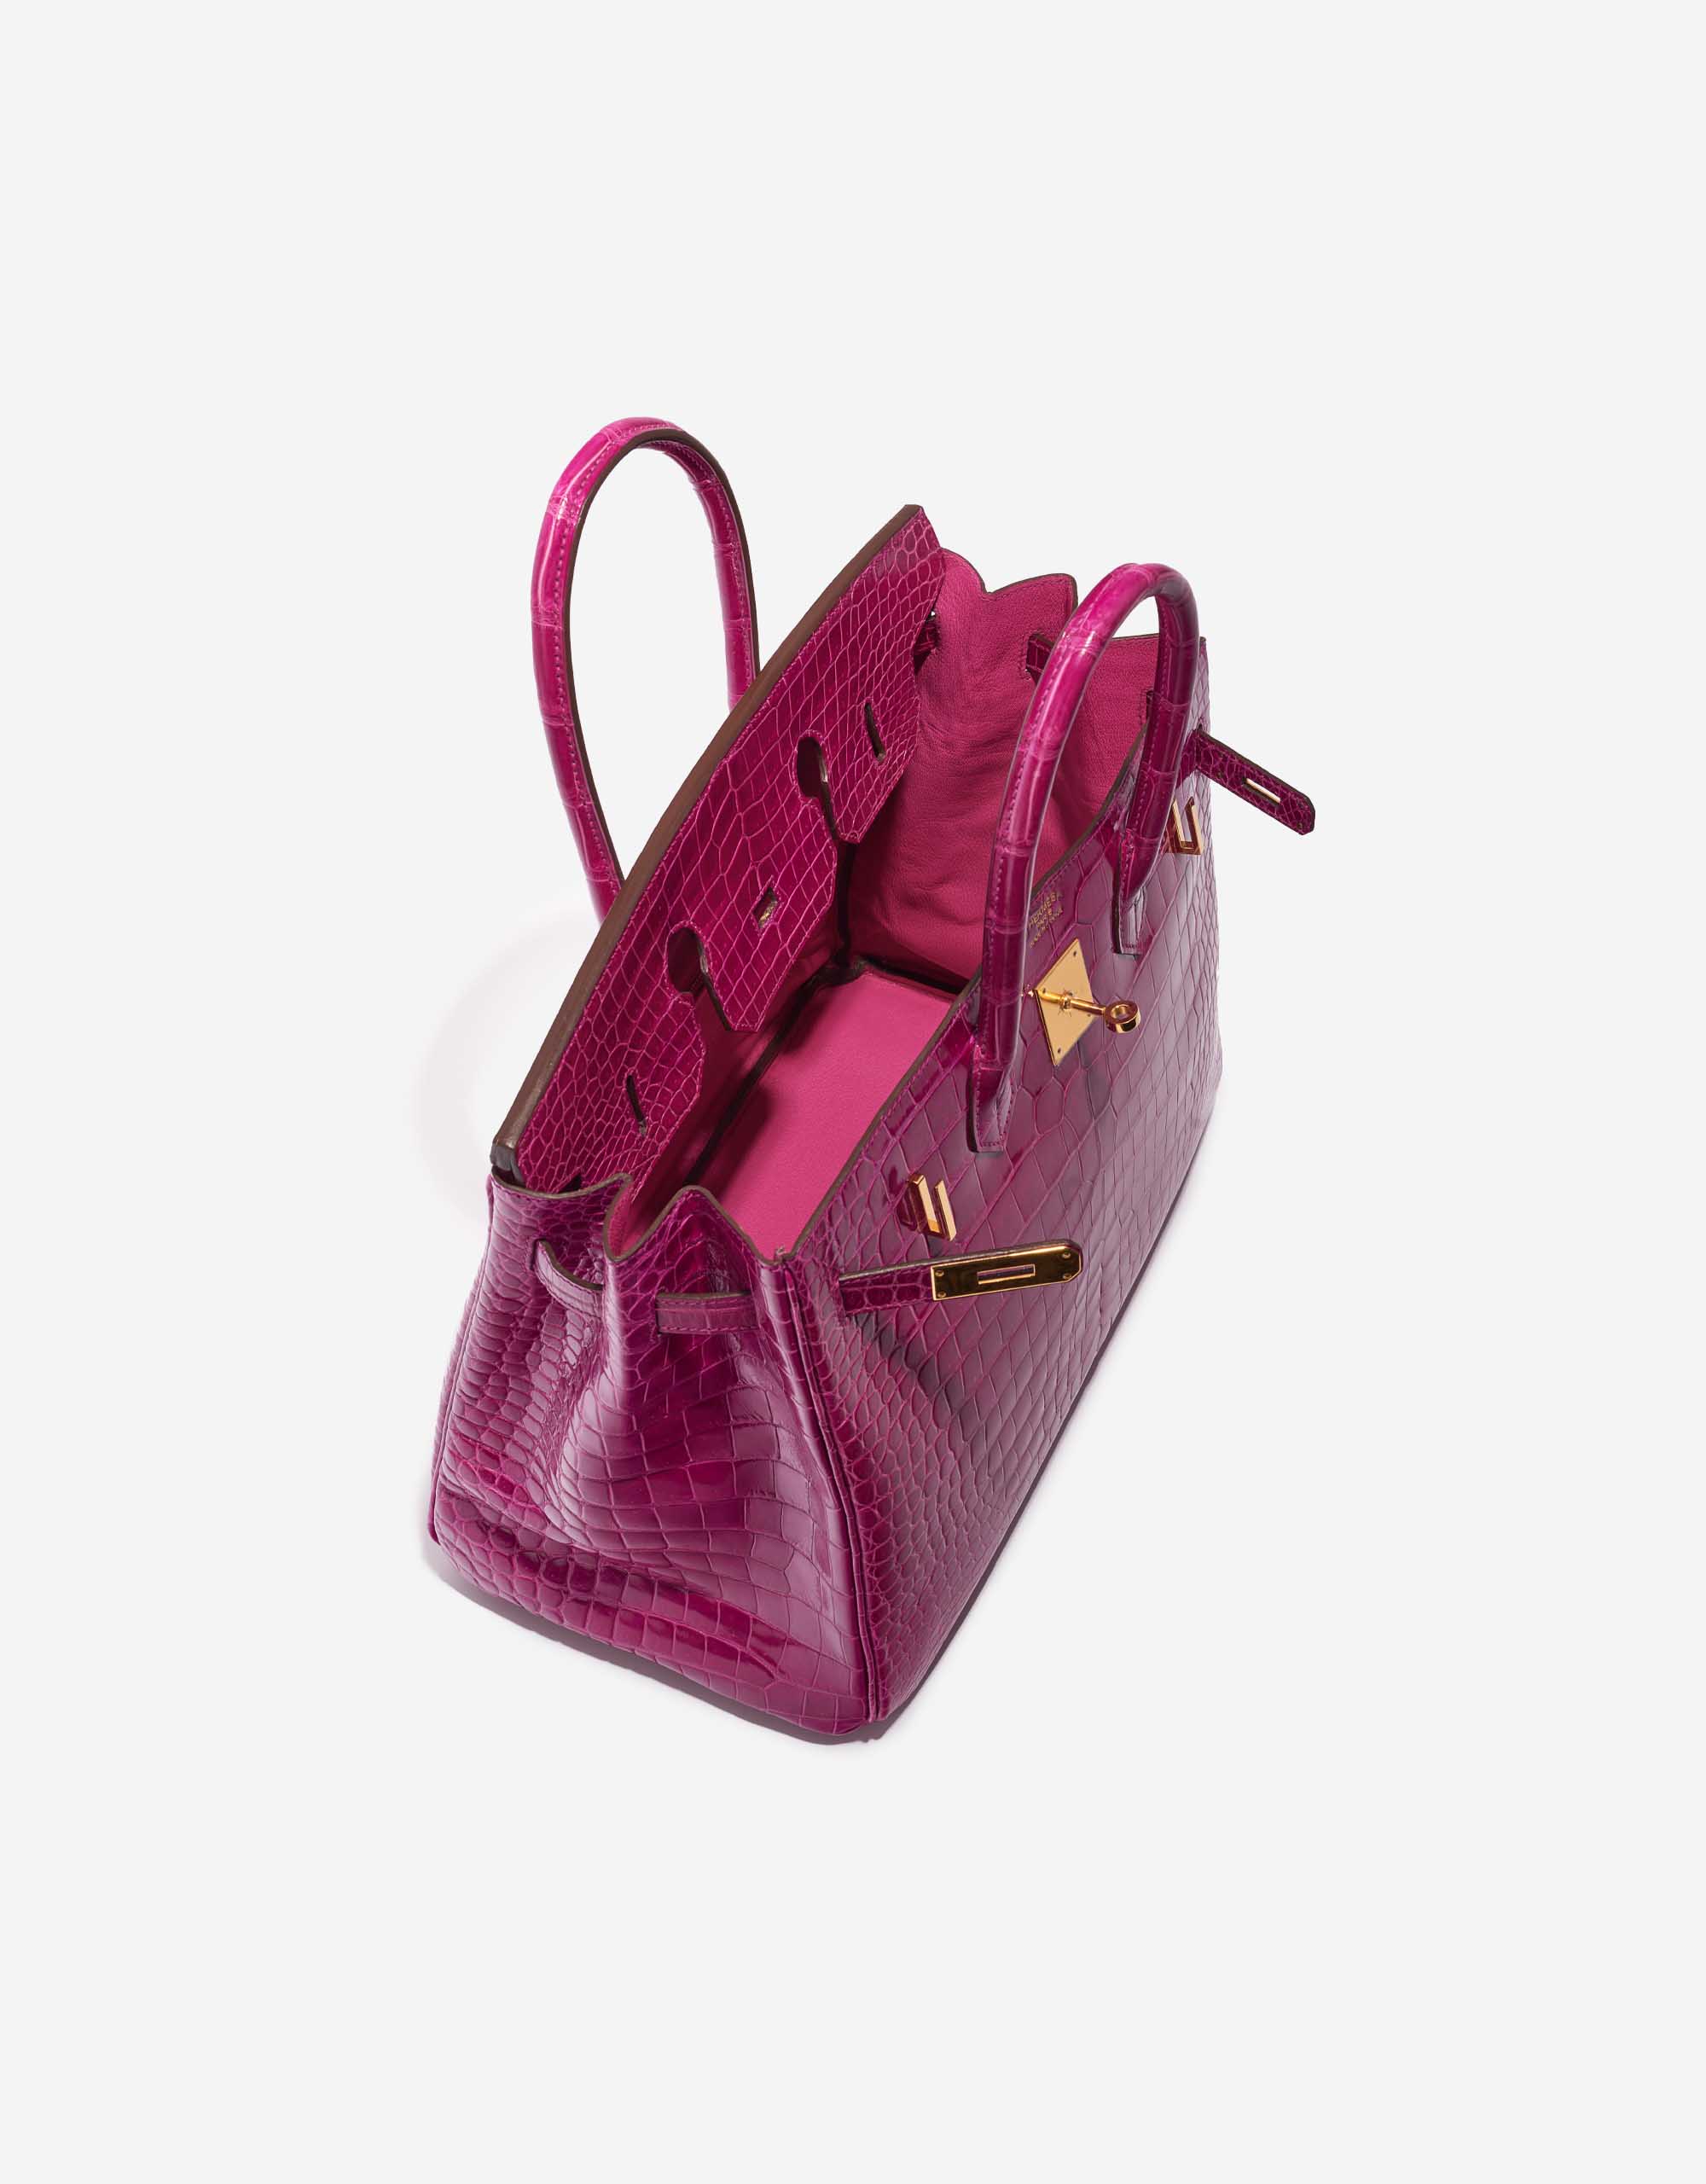 Pre-owned Hermès Tasche Birkin 35 Porosus Crocodile Rose Scheherazade Pink Inside | Verkaufen Sie Ihre Designer-Tasche auf Saclab.com